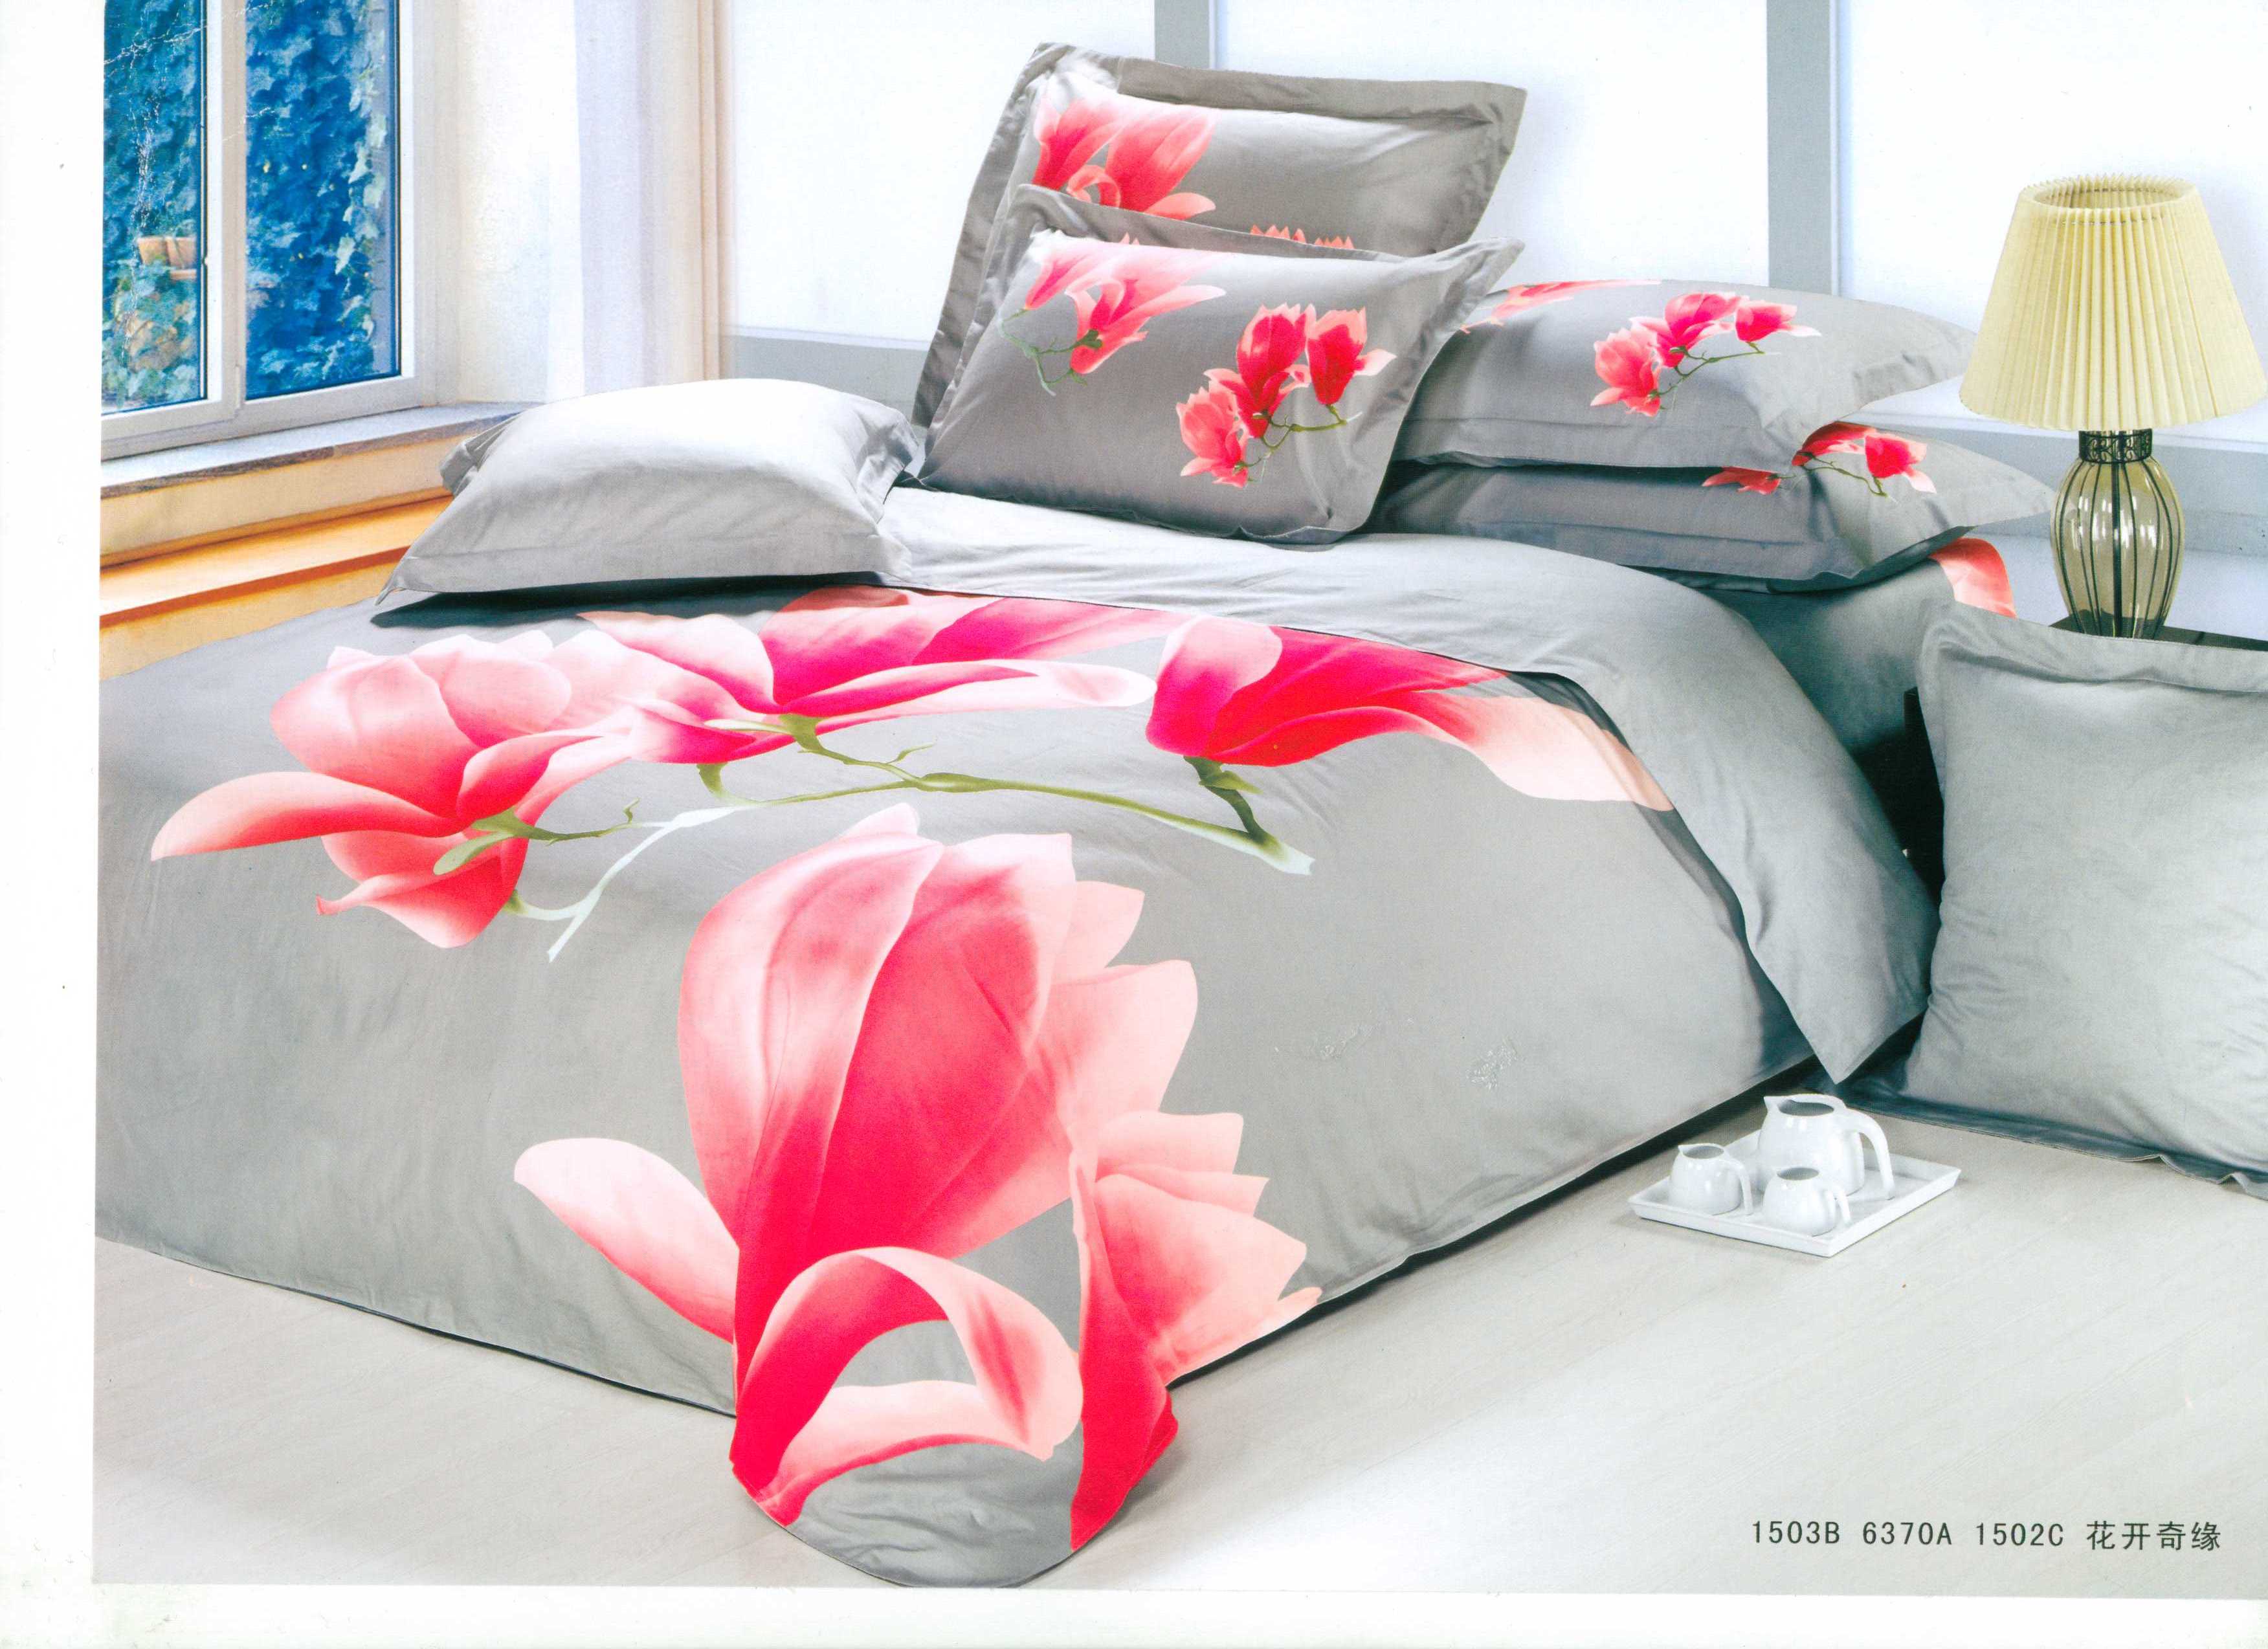 床罩式四件套 健康环保床上用品系列;布艺、件套;家居时尚;芯类;委托加工; 青岛艾威尔商贸有限公司